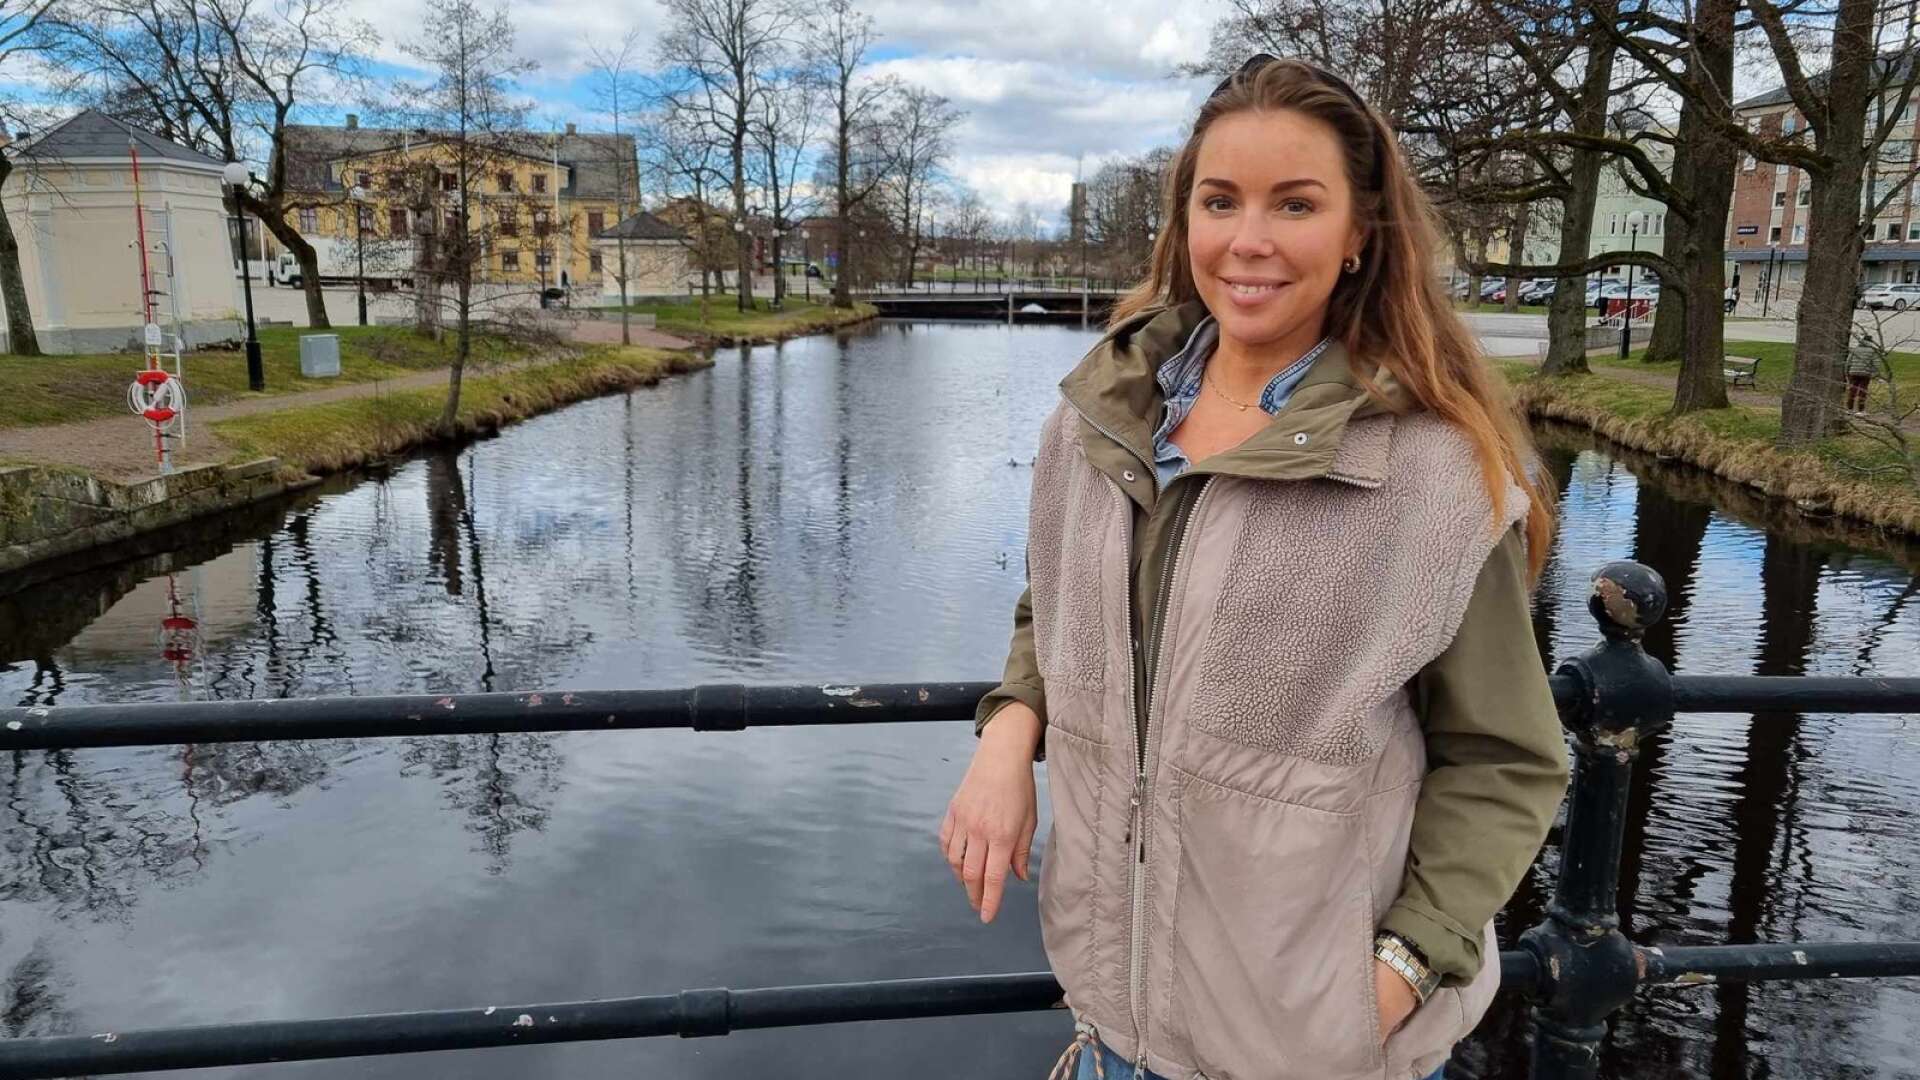 Lynn Ivarsson blev tv-kändis över en natt. 40-åringen från Bäckhammar är överraskad av intresset för hennes medverkan i Bonde söker fru - jorden runt. ”Det är bland det roligaste jag gjort” säger hon.